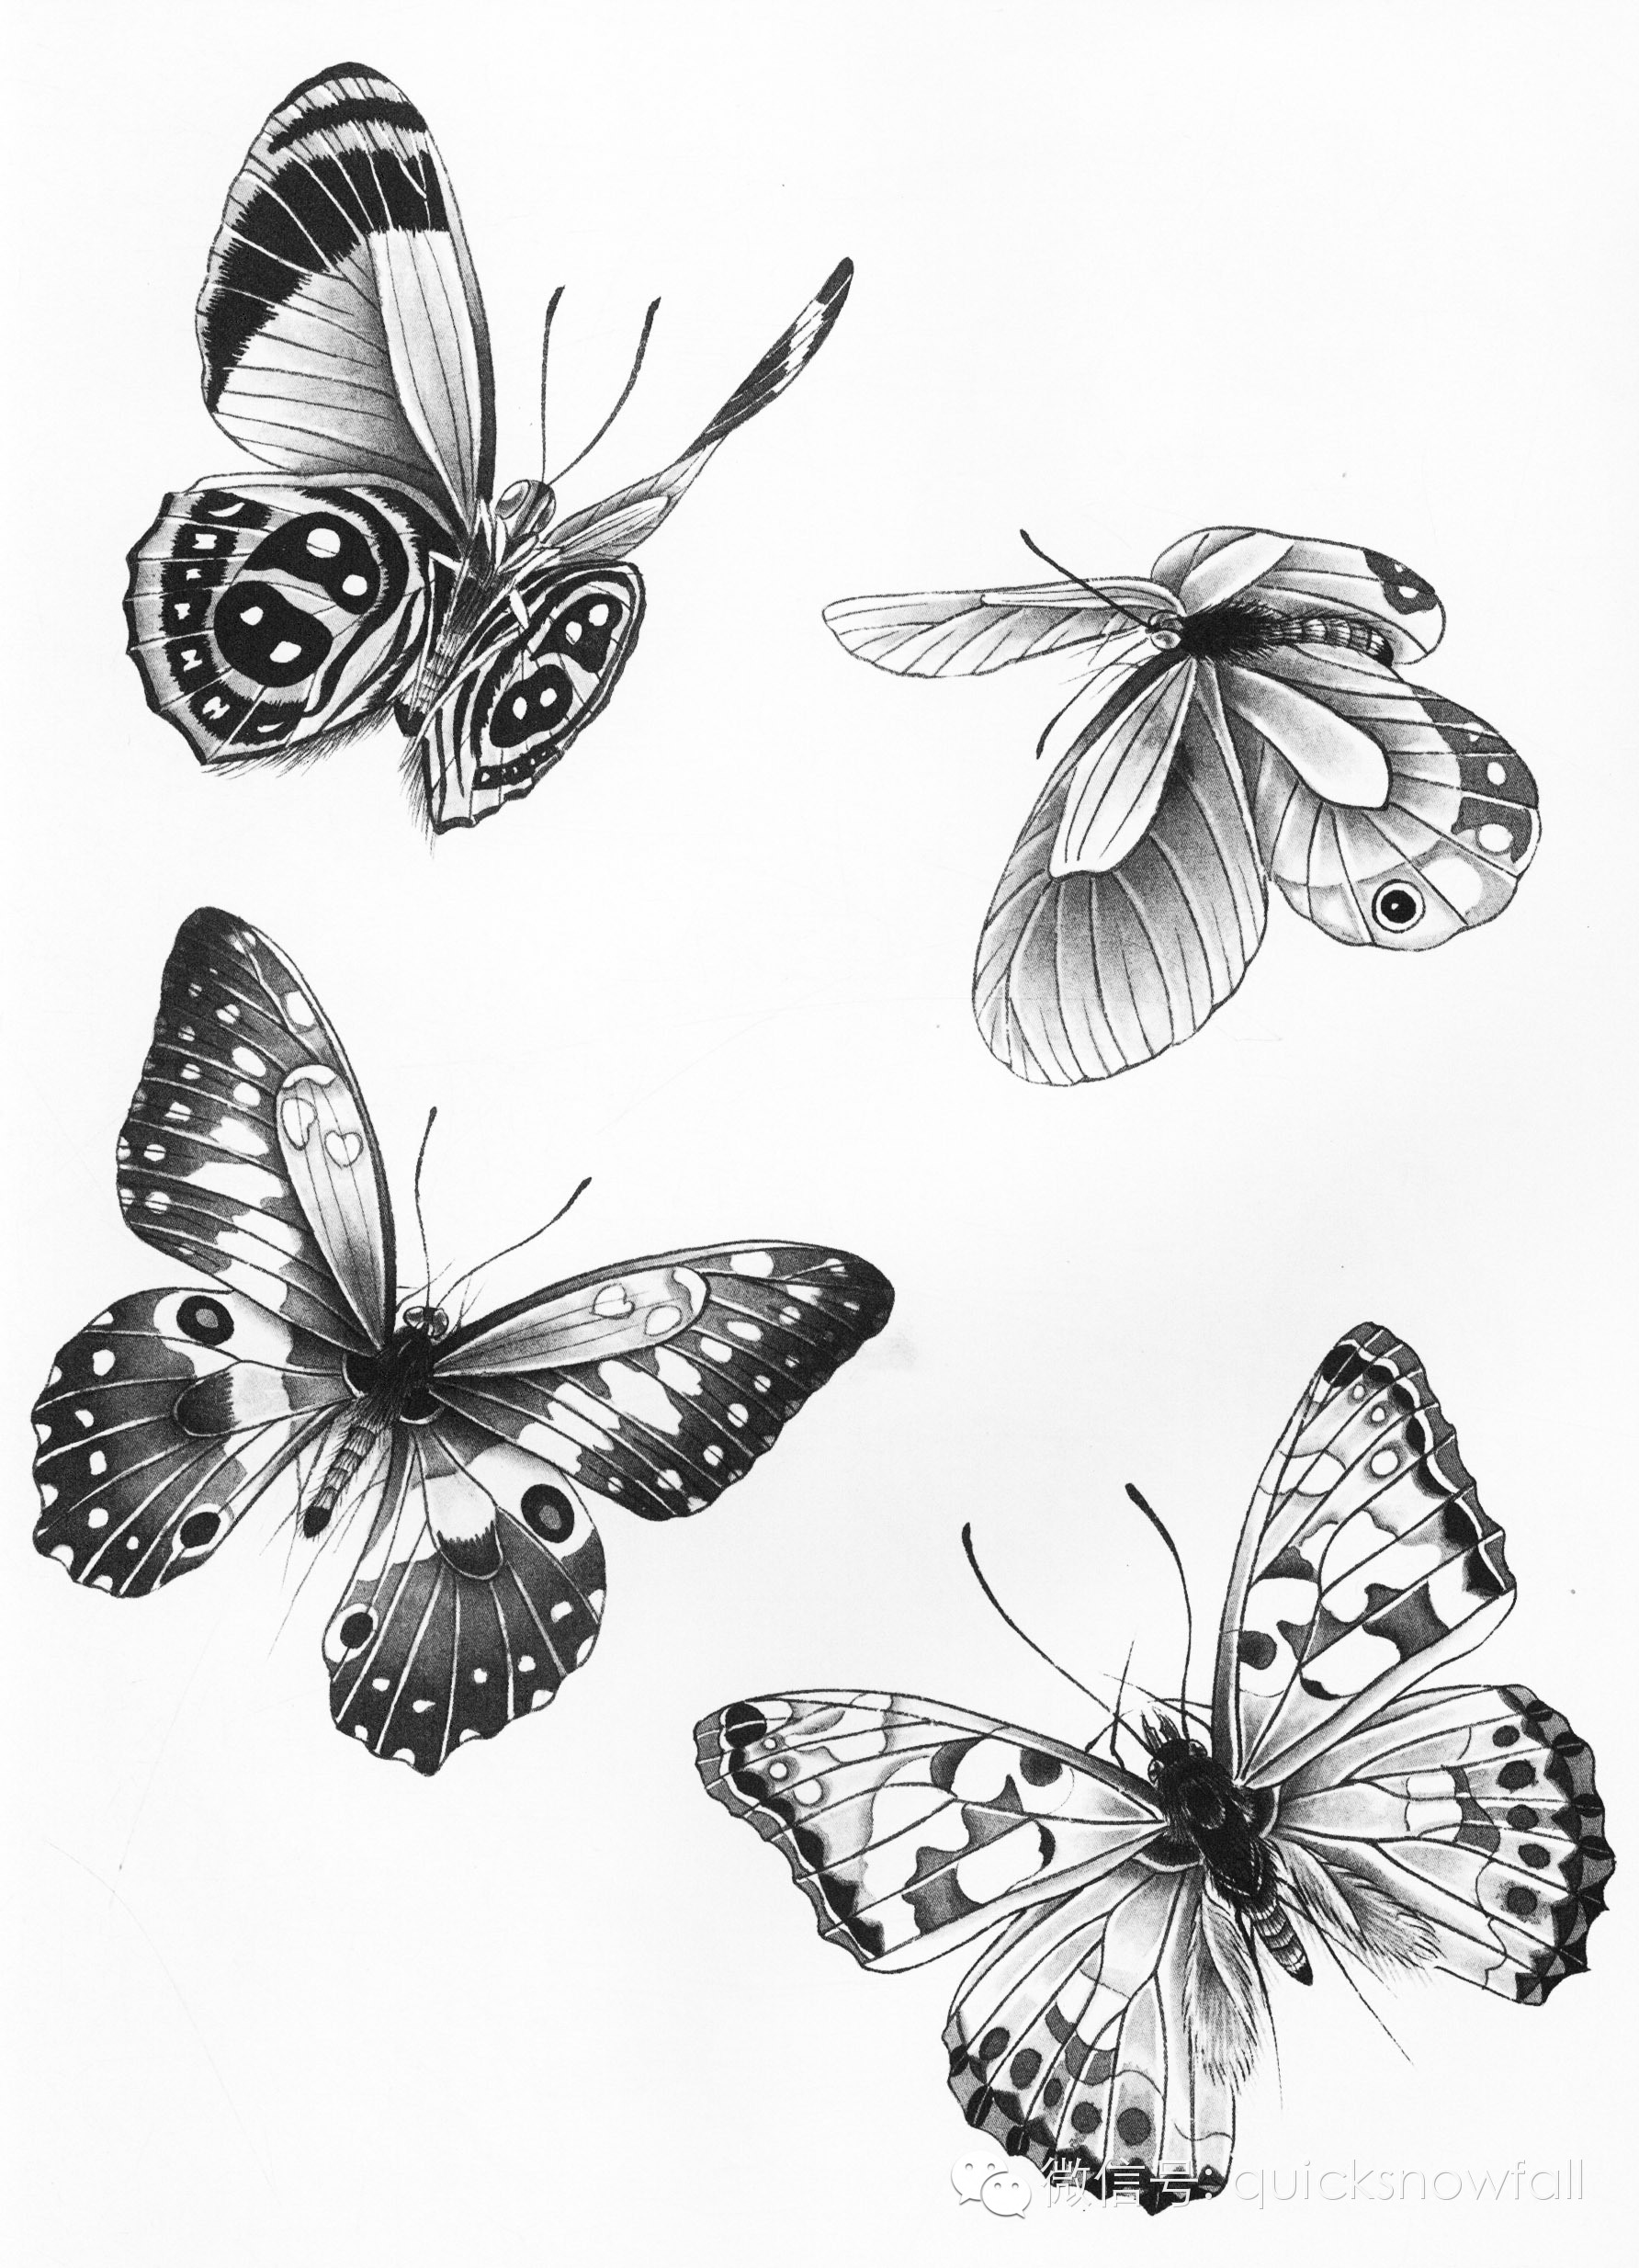 工笔蝴蝶线描画谱4步骤五:朱磦加胭脂点蝶眼,花头提白粉,藤黄加白粉点